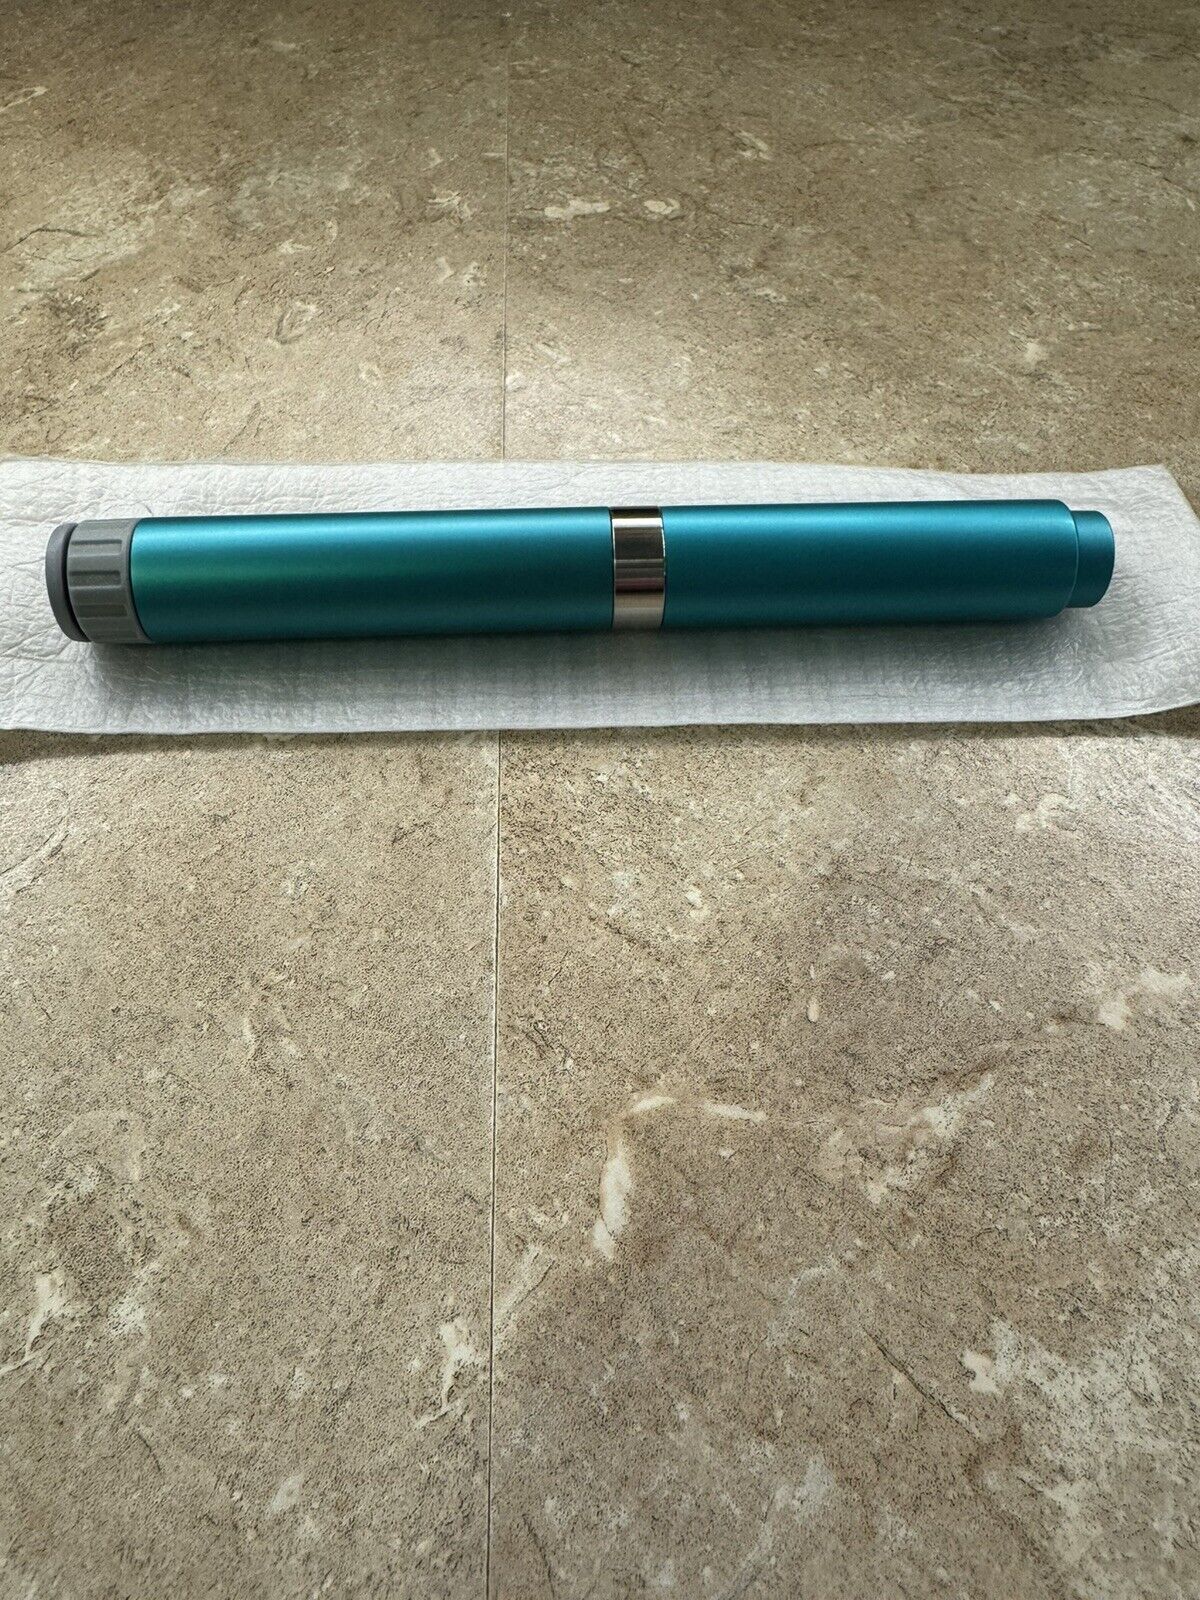 Easy cartridge insulin pen